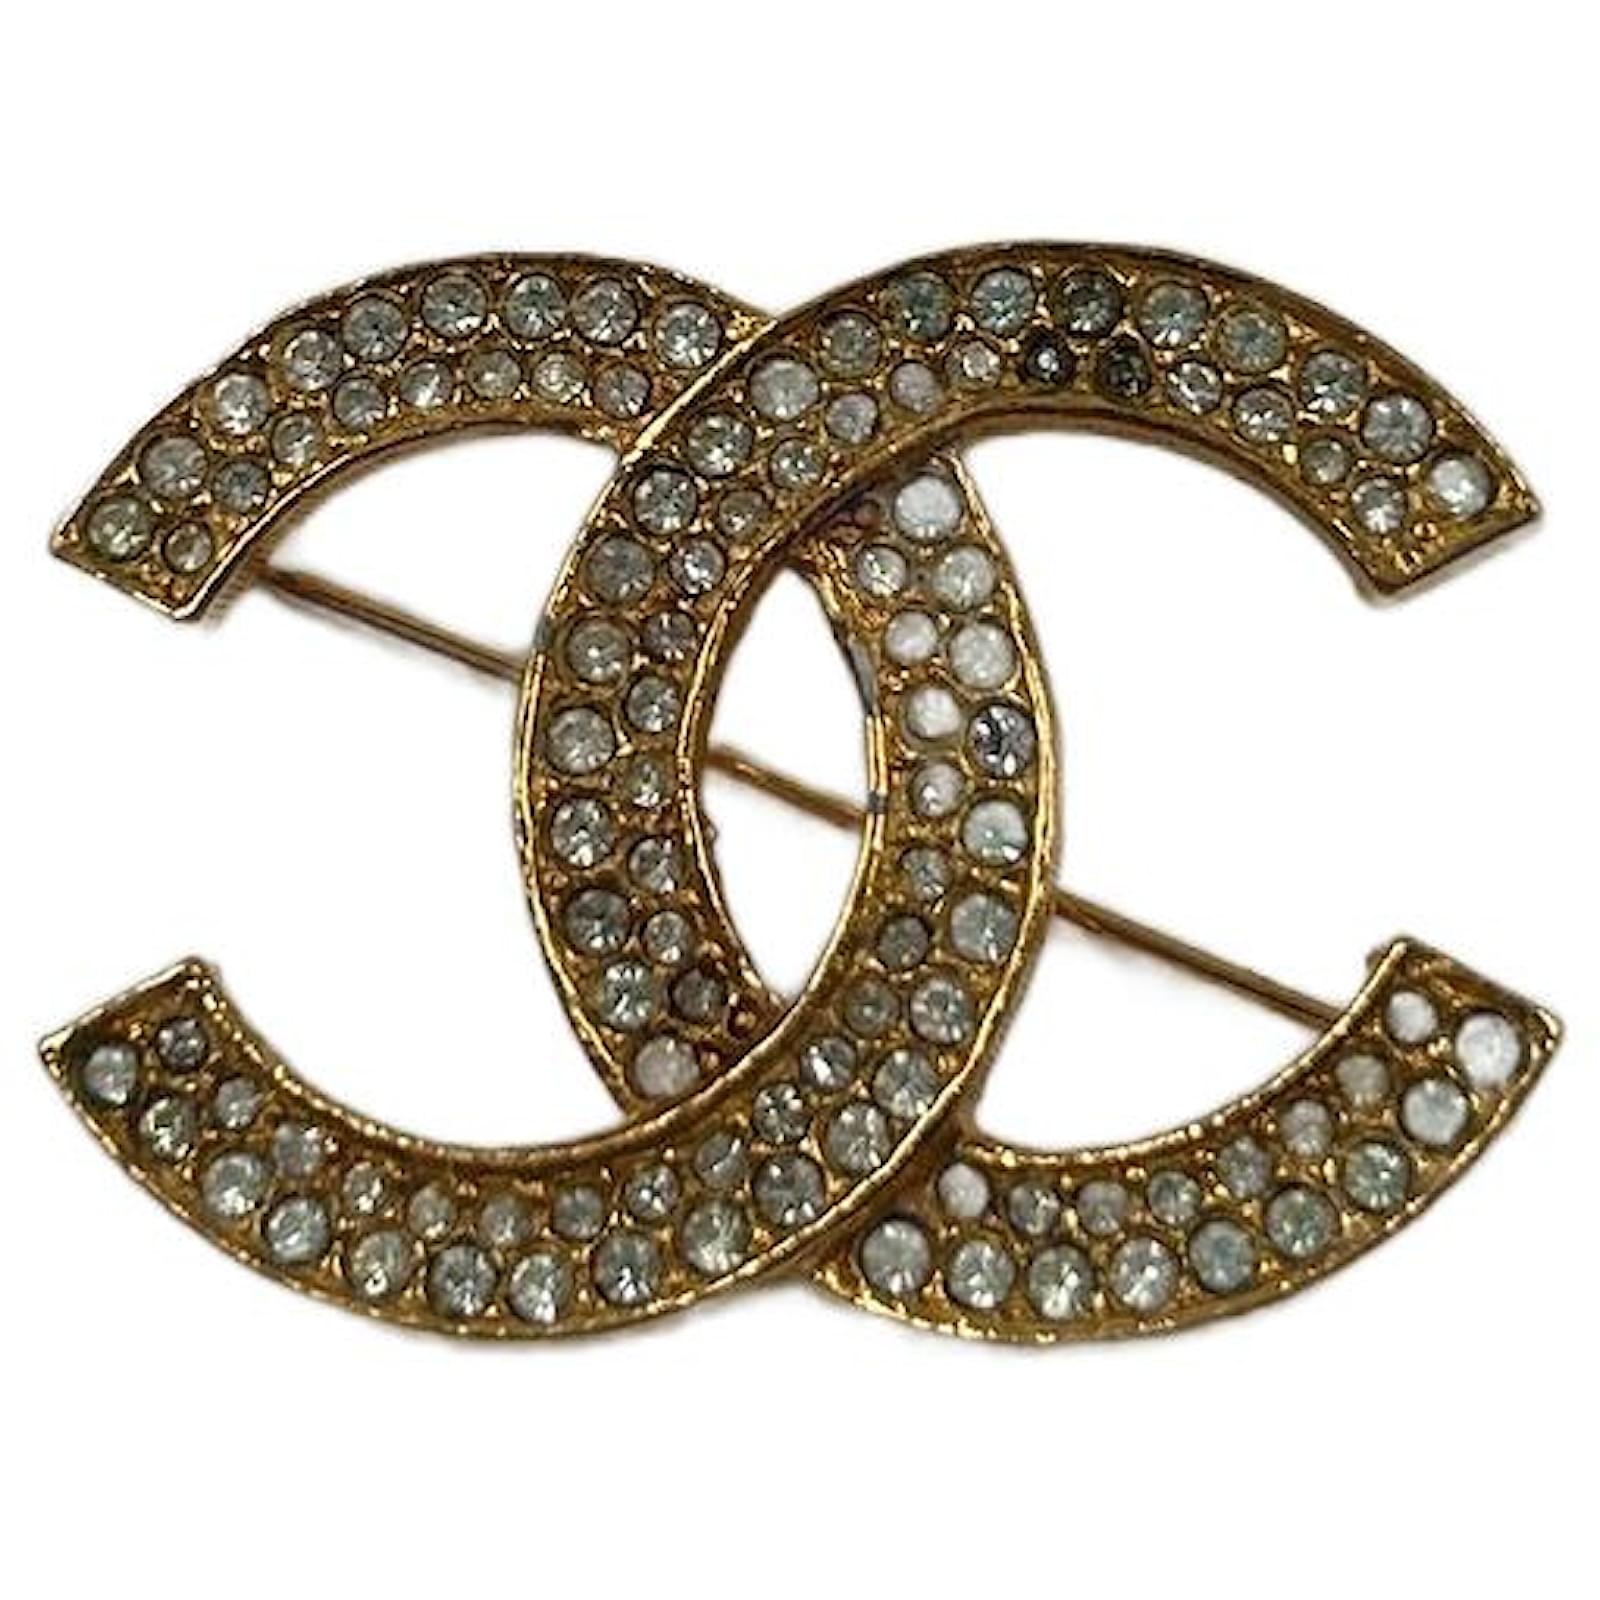 Gold-Toned Chanel Rhinestone CC Brooch